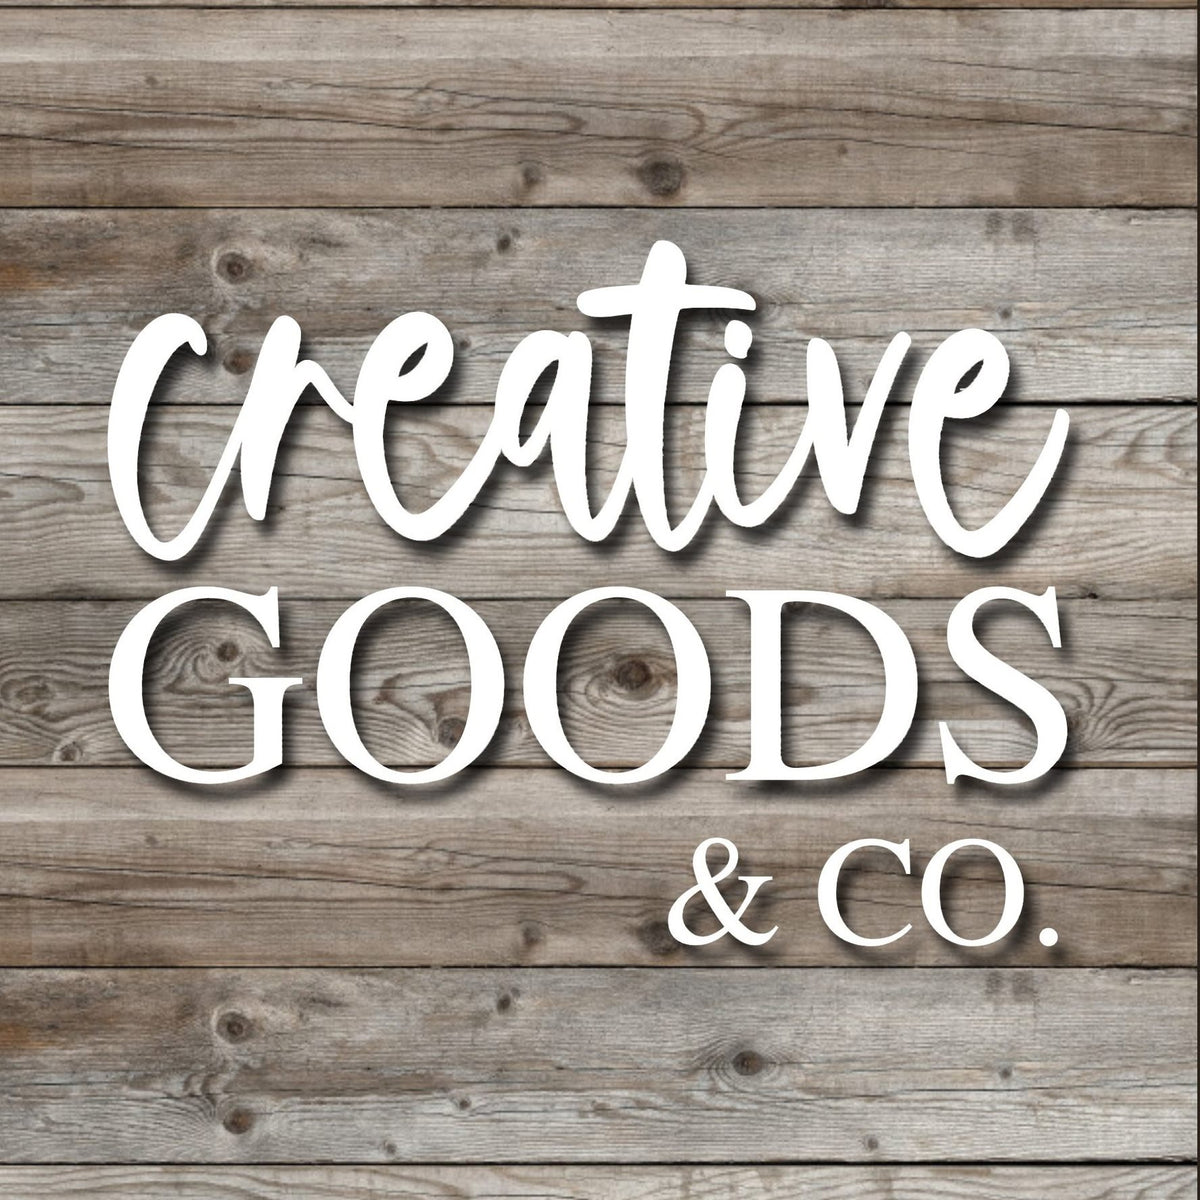 Creative Goods & Co.